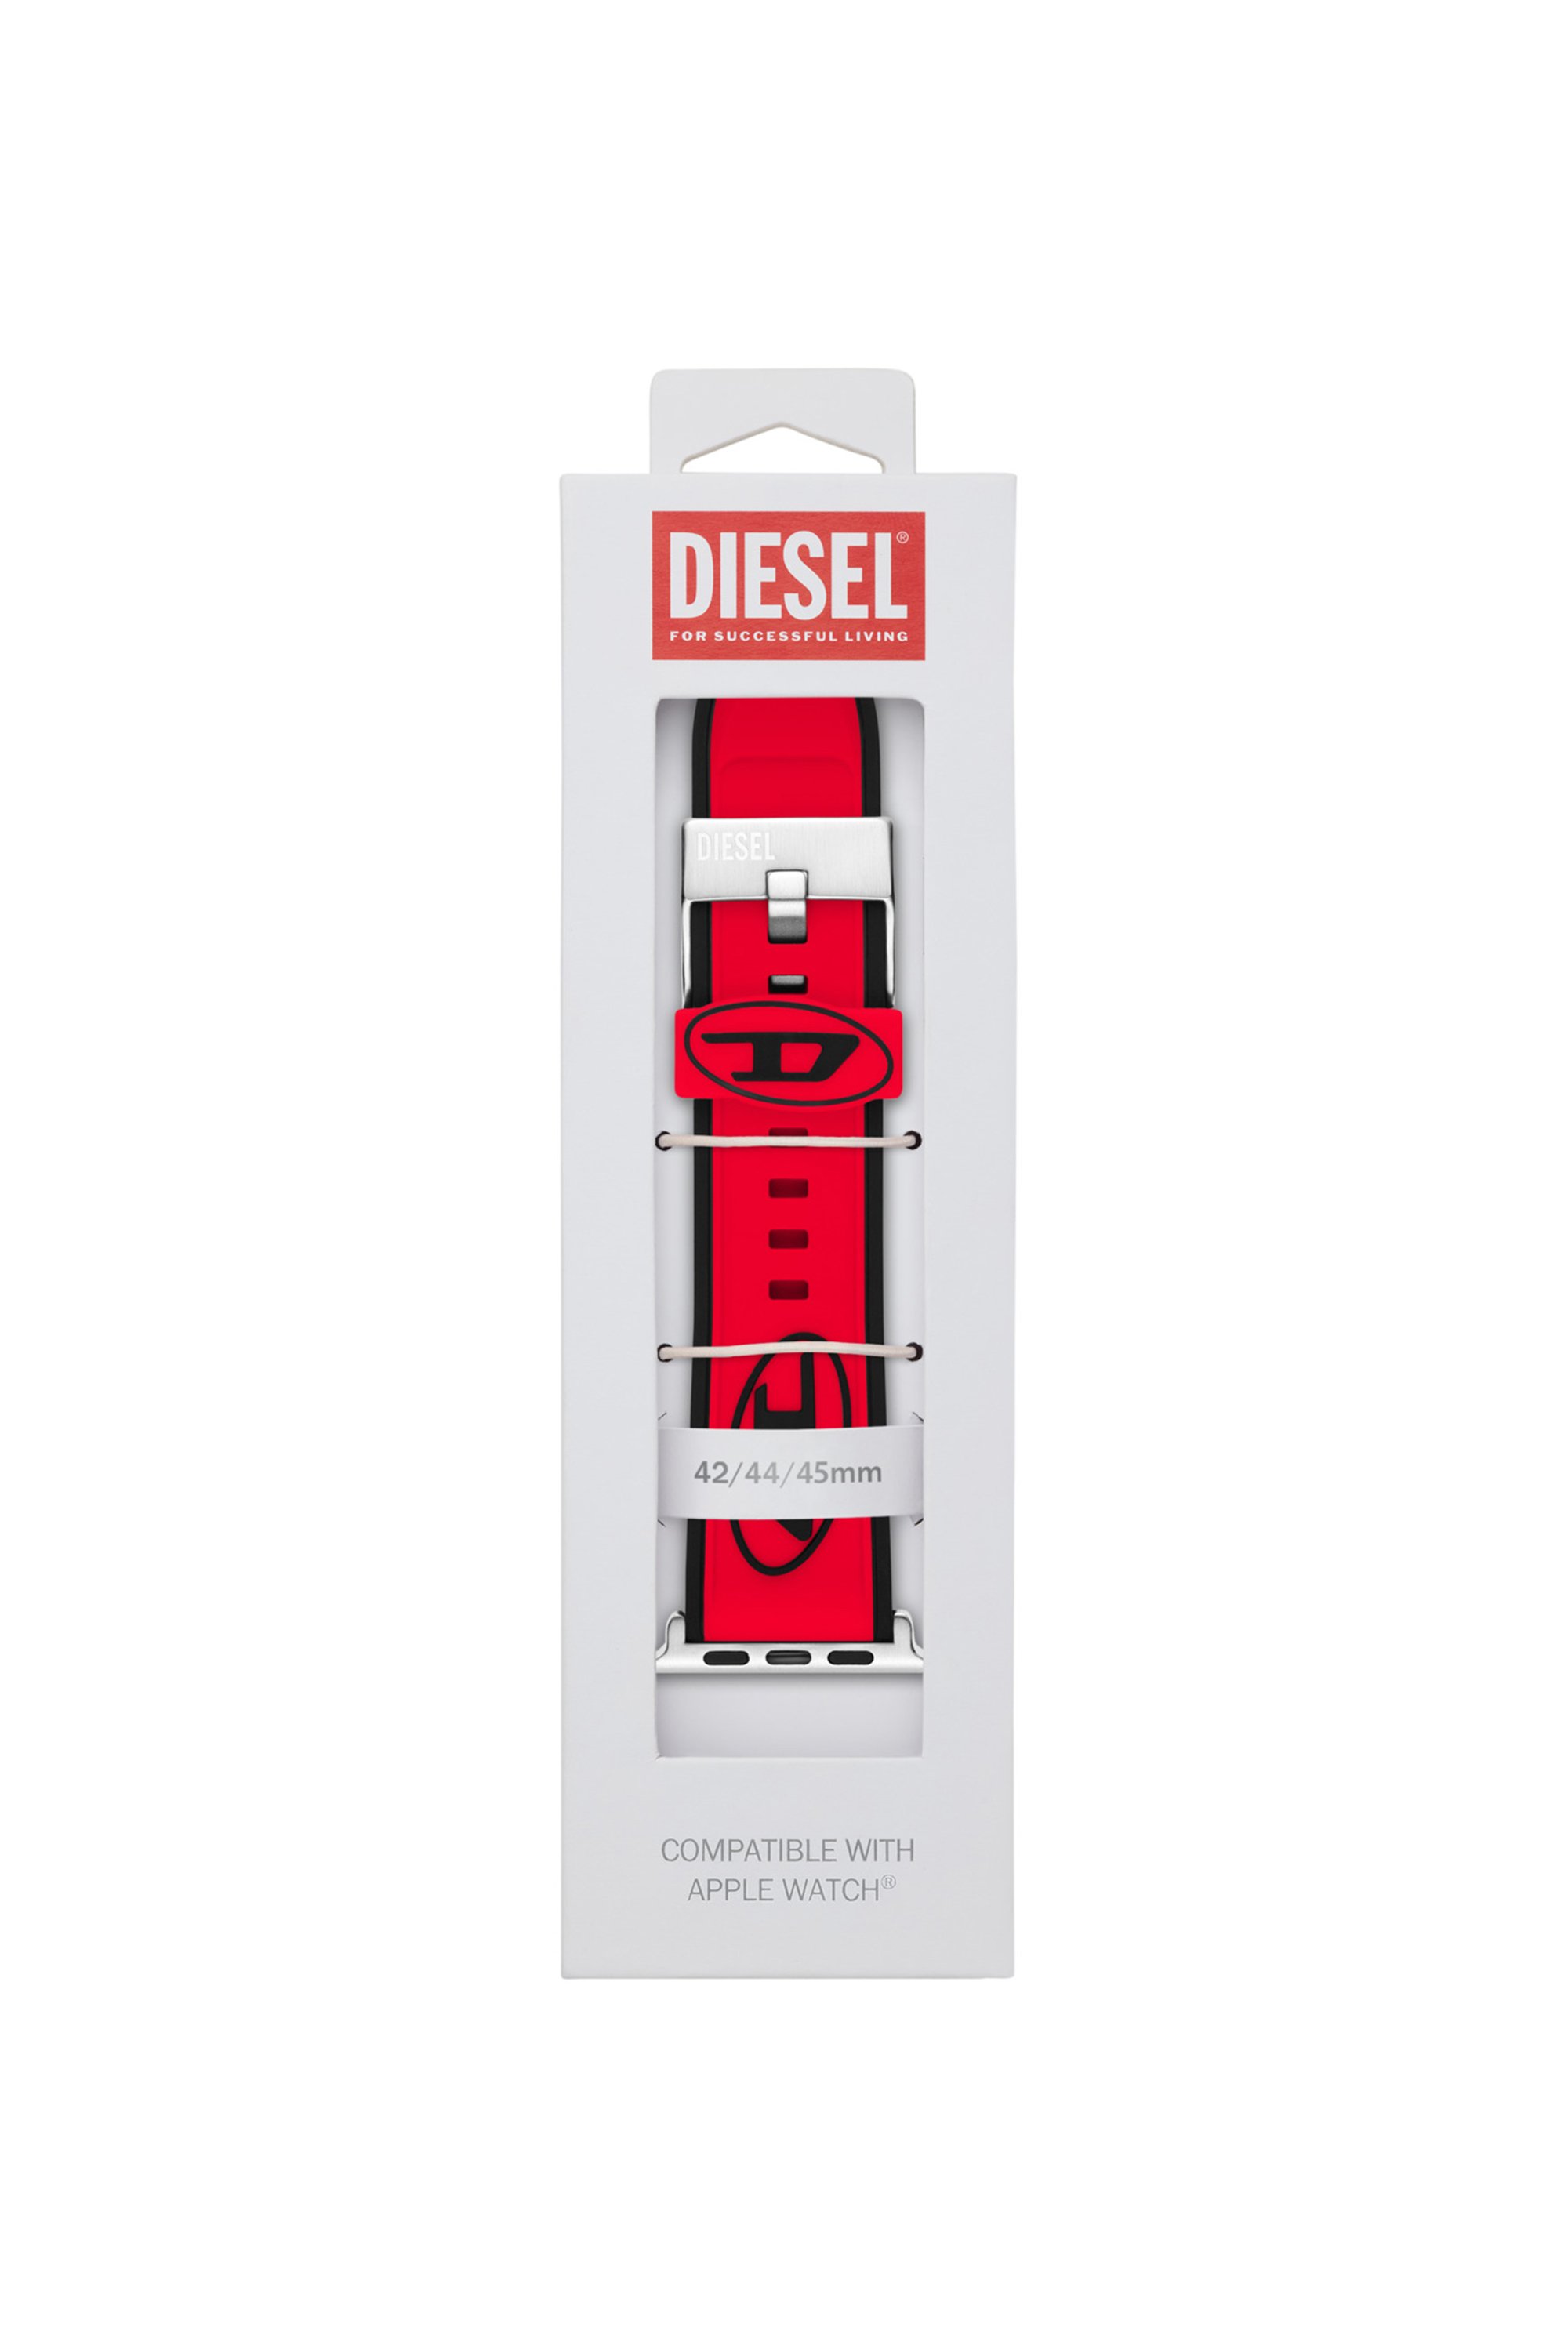 Diesel - DSS010, Rouge - Image 2